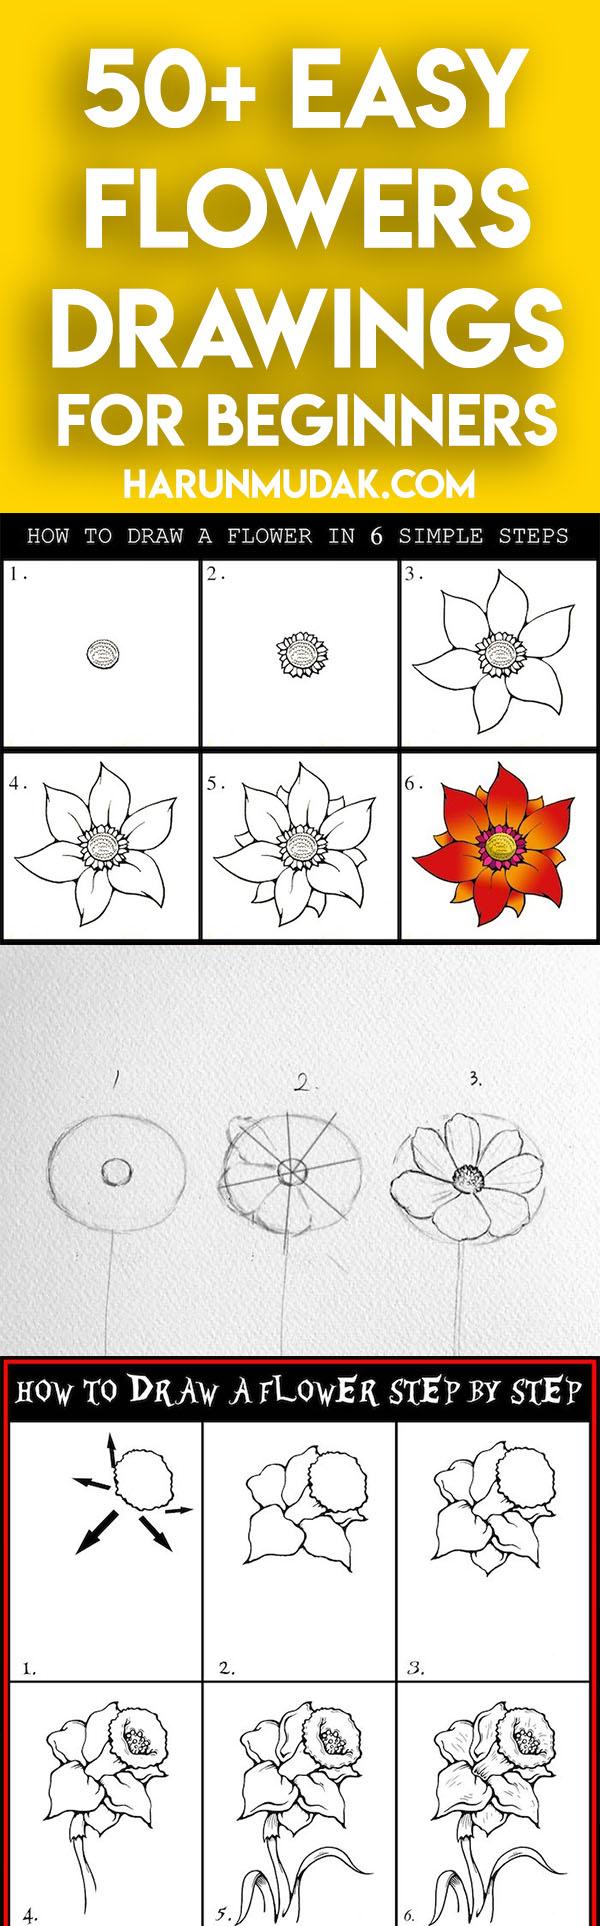 35+ Flower Drawings for Beginners Step by Step HARUNMUDAK